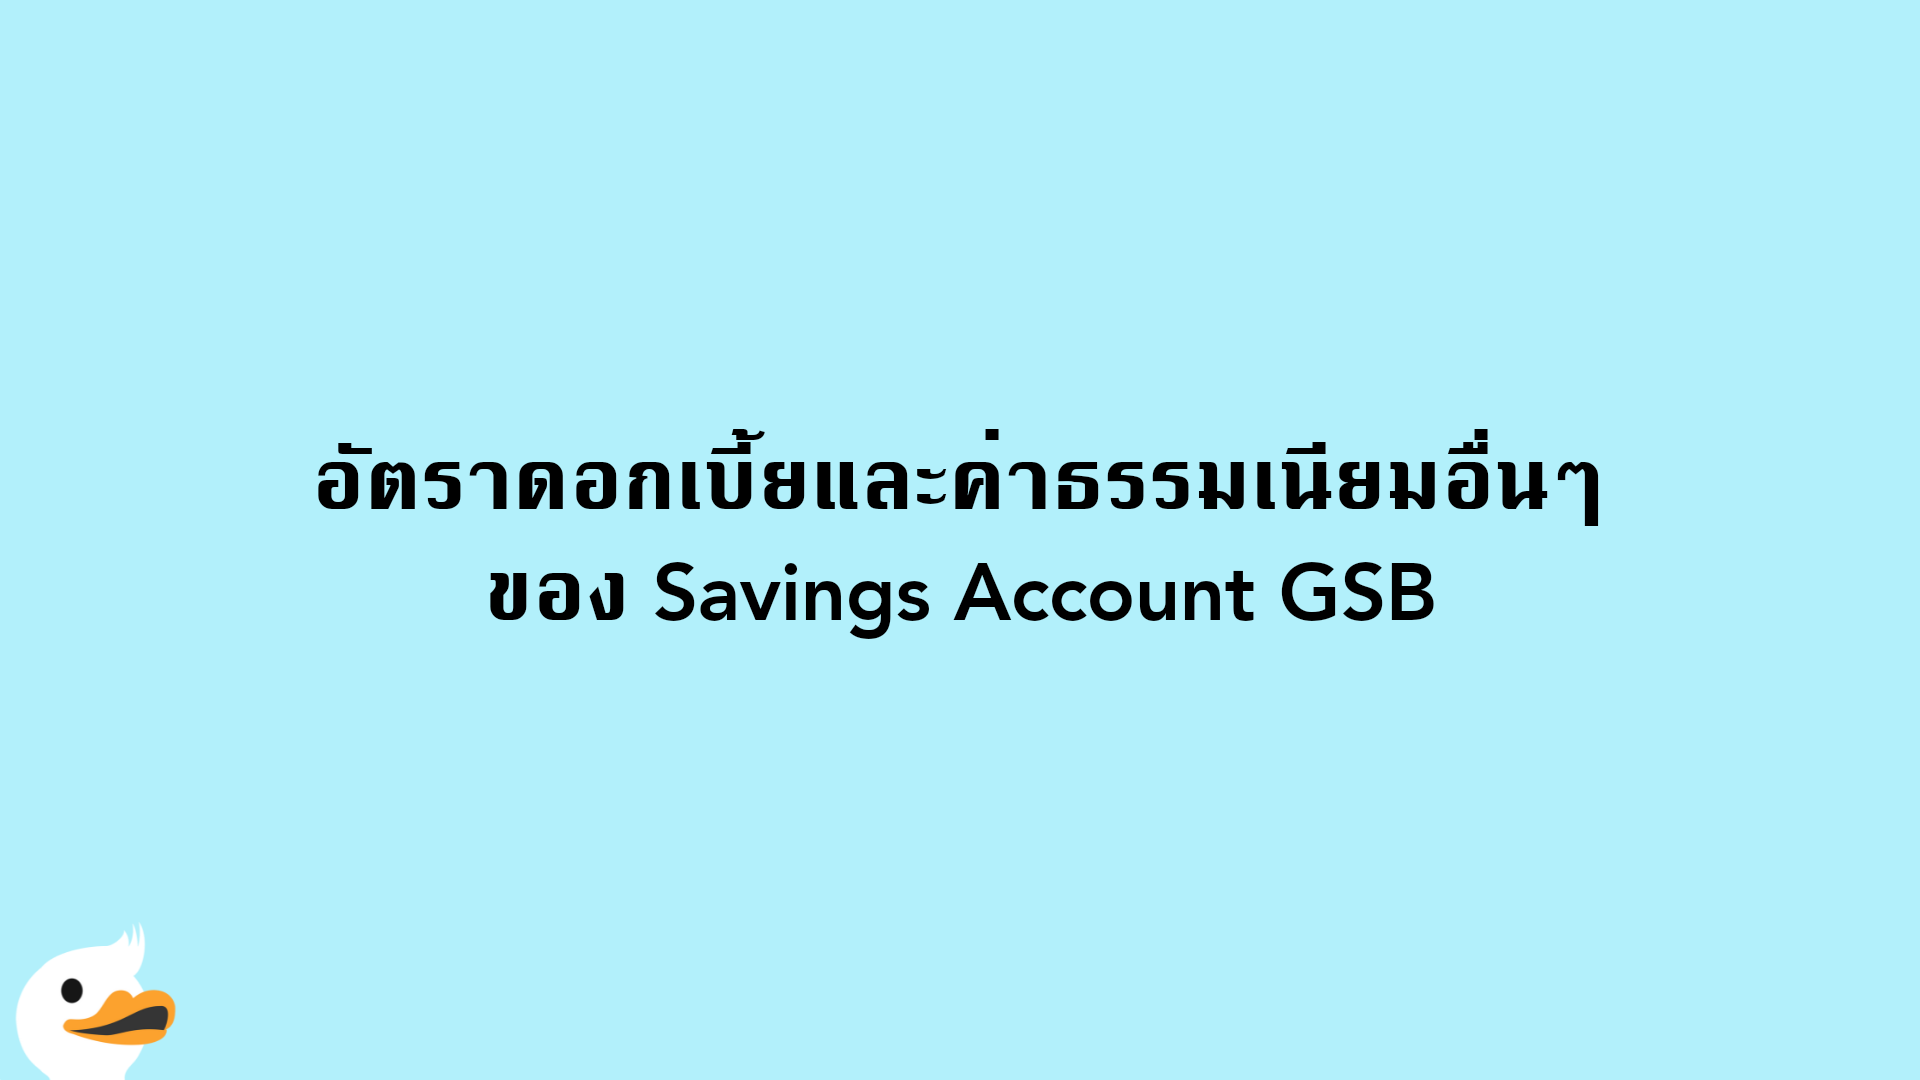 อัตราดอกเบี้ยและค่าธรรมเนียมอื่นๆ ของ Savings Account GSB